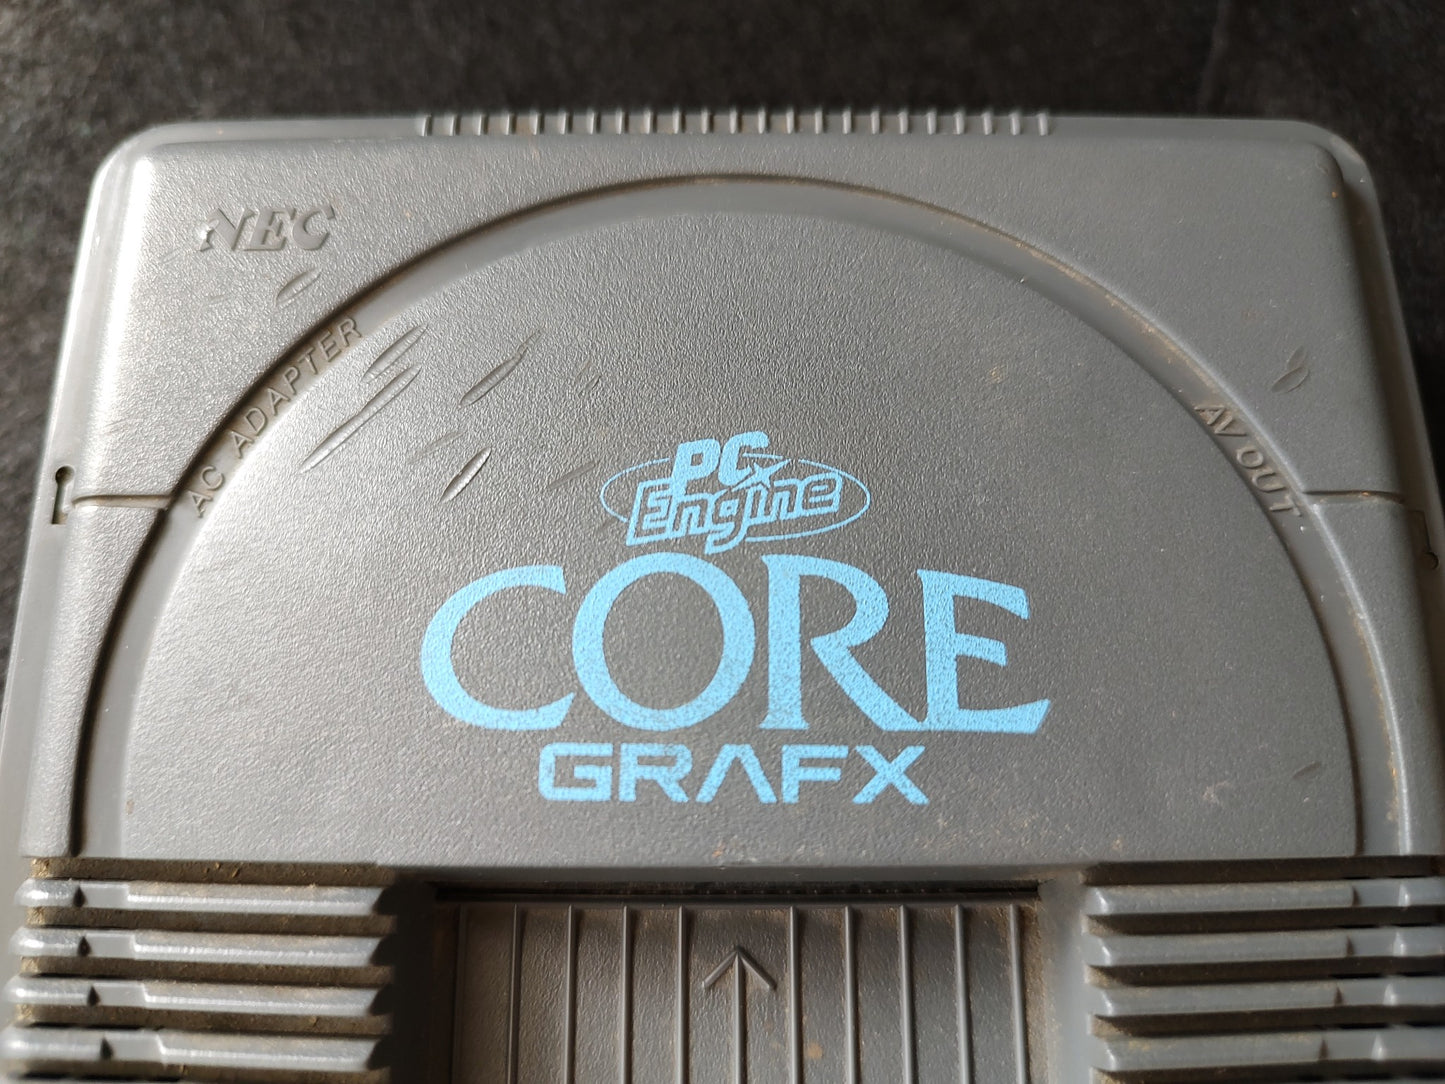 Defective, Broken NEC PC Engine Coregrafx Console PI-TG3 -f0707-2